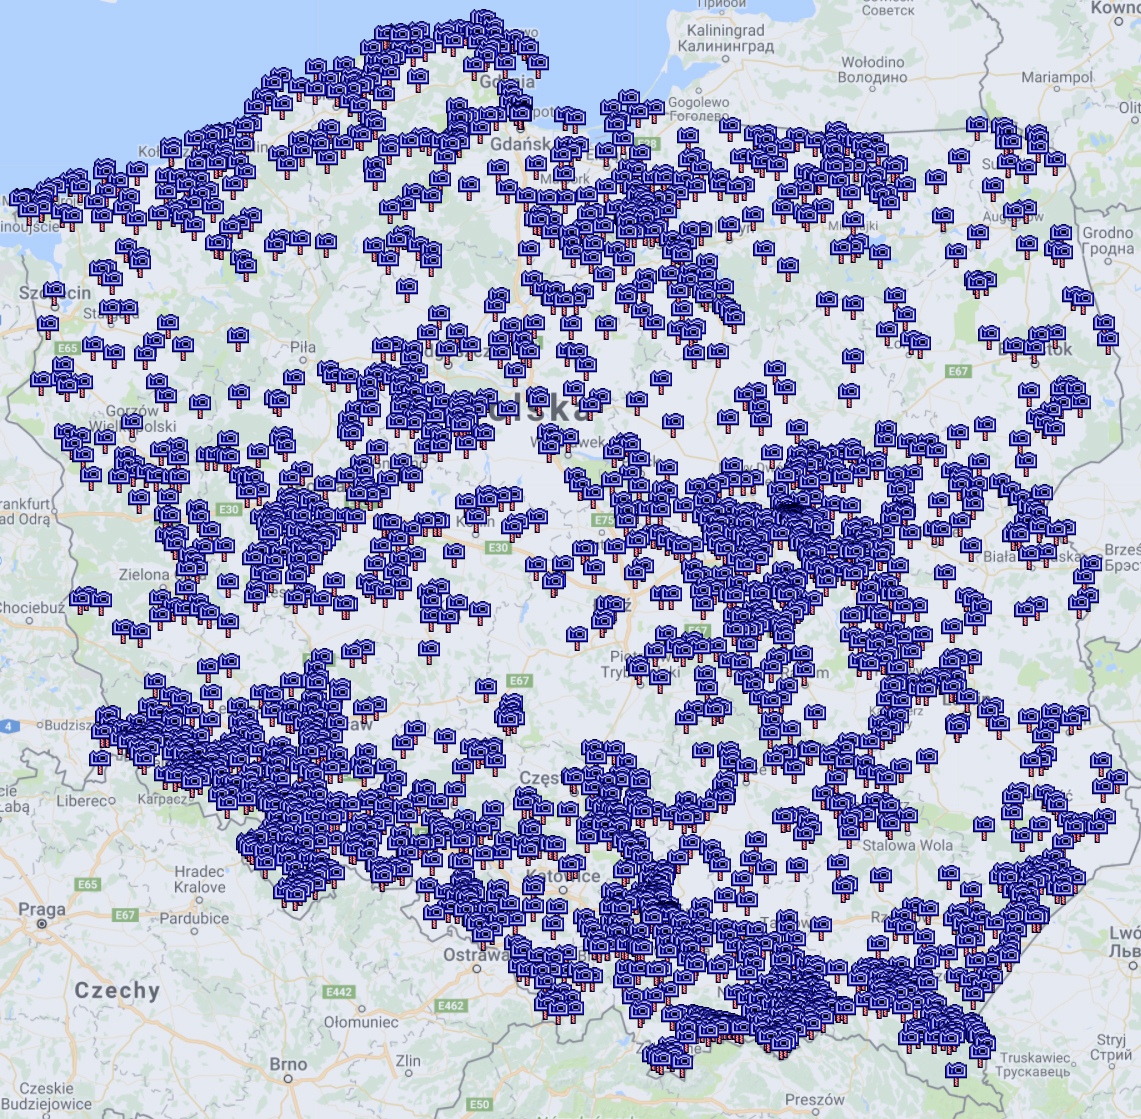 Mapa ciekawych miejsc w Polsce z albumów publikowanych na Facebooku